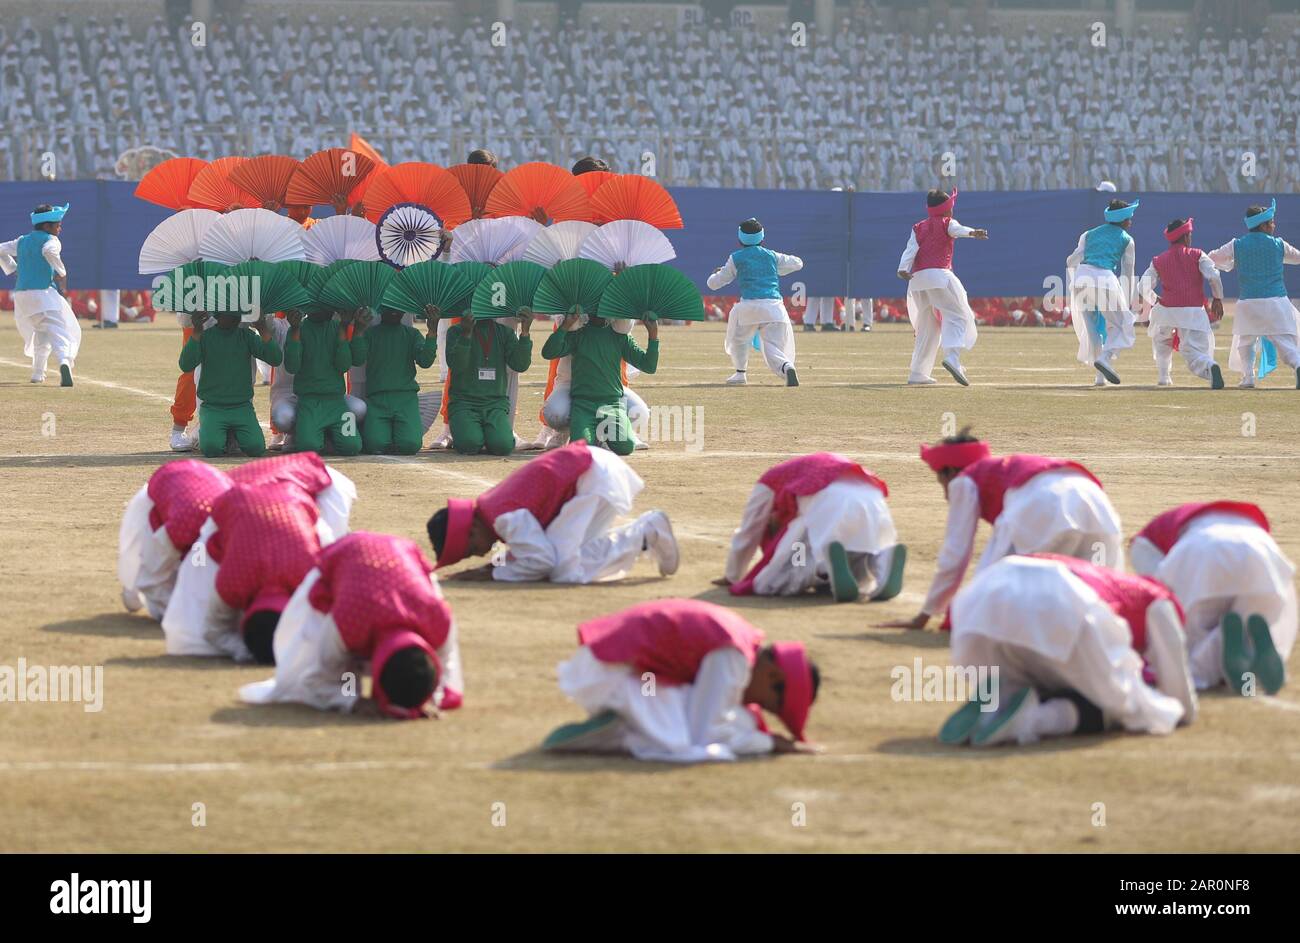 Schulschüler veranstalten während der Feier in Delhi.die staatliche Behörde von Delhi hat einen Tag zuvor einen Tag vor dem Tag der Republik veranstaltet, da die Kultur- und jährliche Republiktagsparade von der Zentralregierung in Delhi organisiert wird. Stockfoto